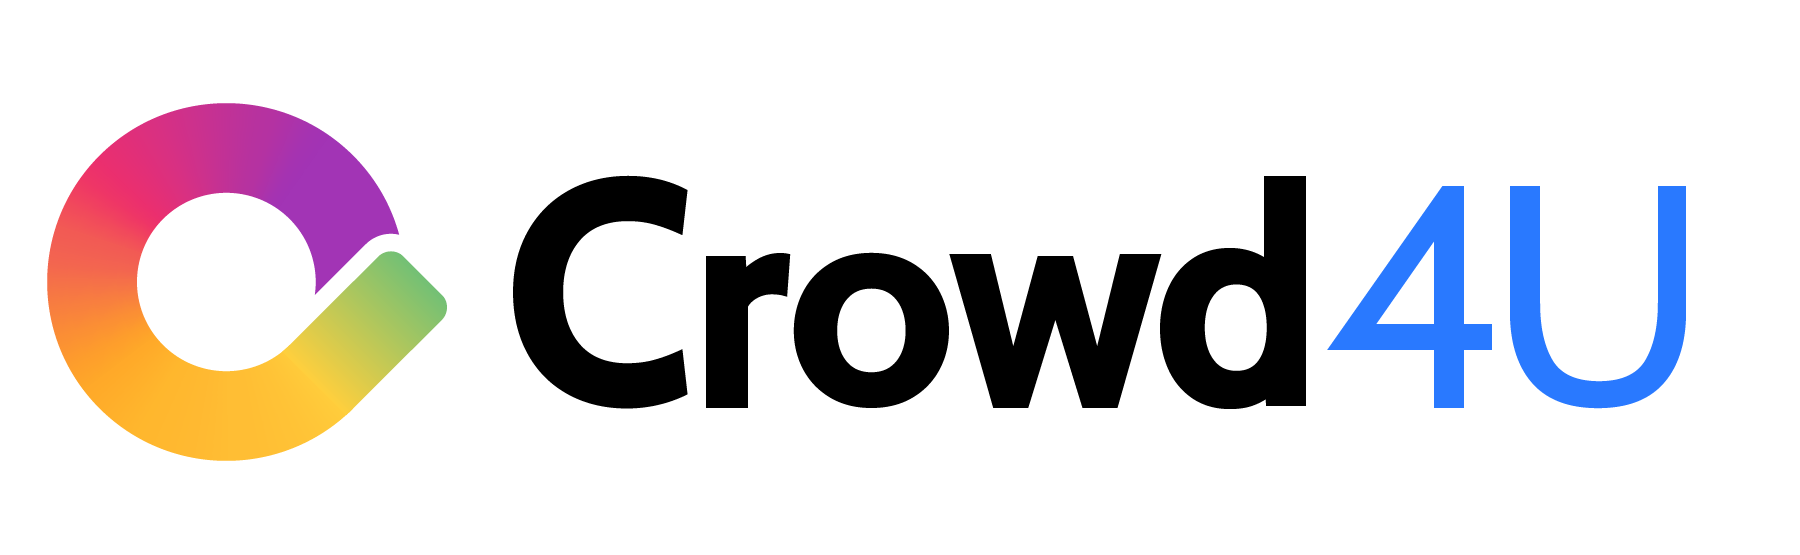 © Crowd4U logo